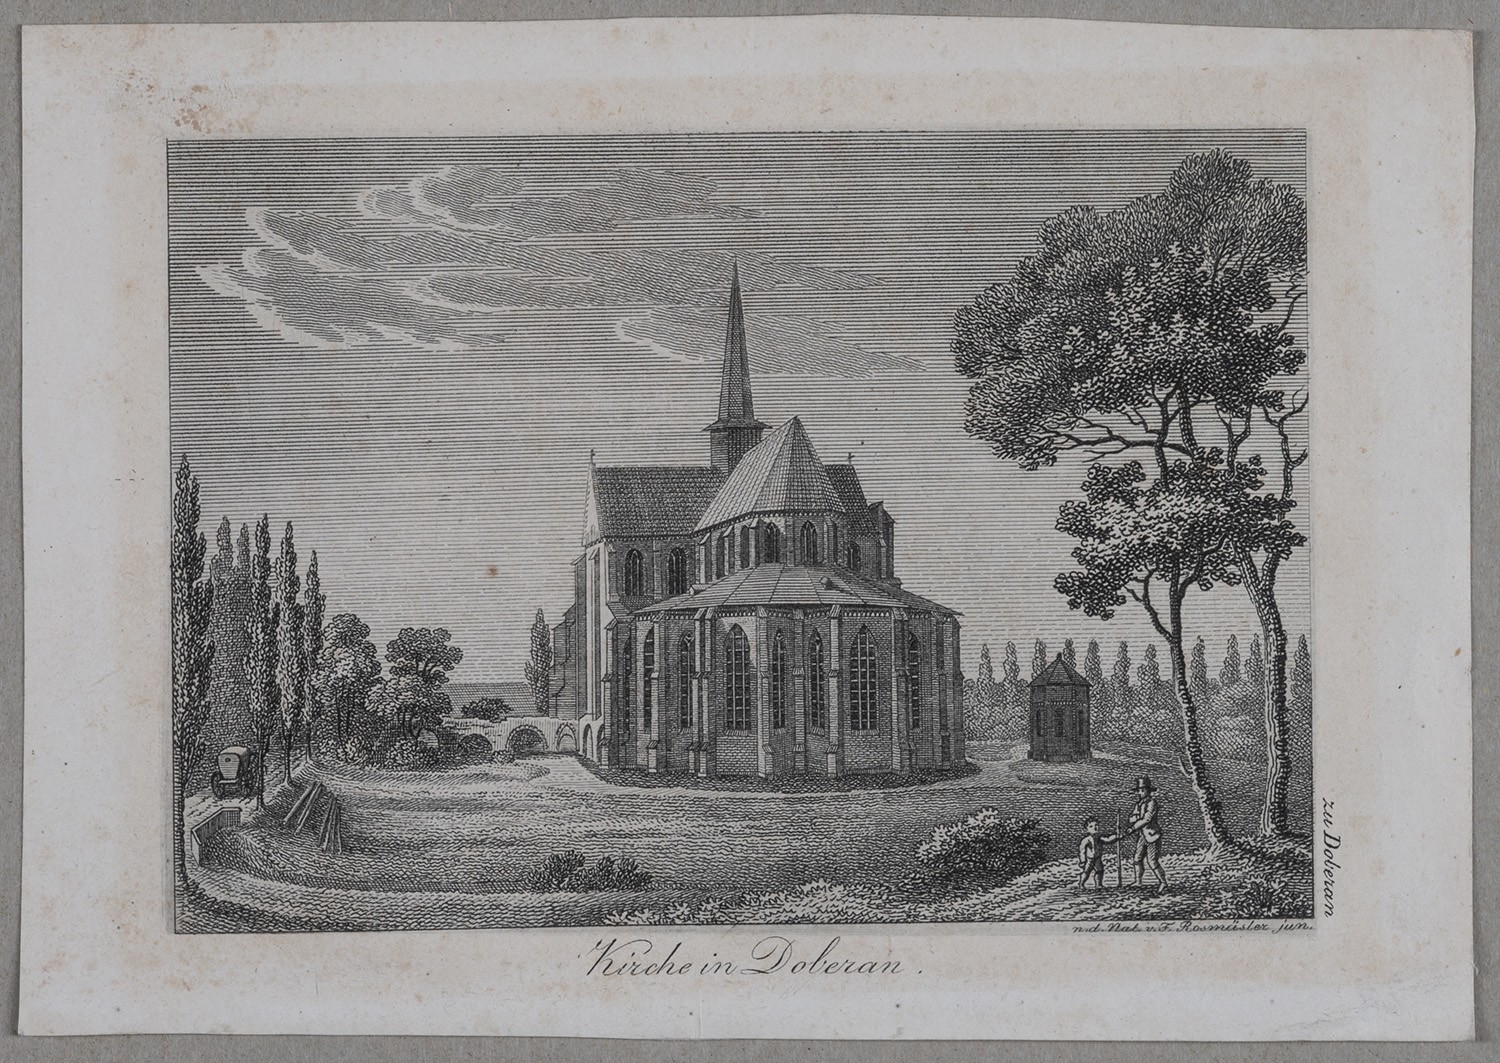 Doberan (Mecklenburg): Kirche von Osten aus der Ferne (Landesgeschichtliche Vereinigung für die Mark Brandenburg e.V., Archiv CC BY)